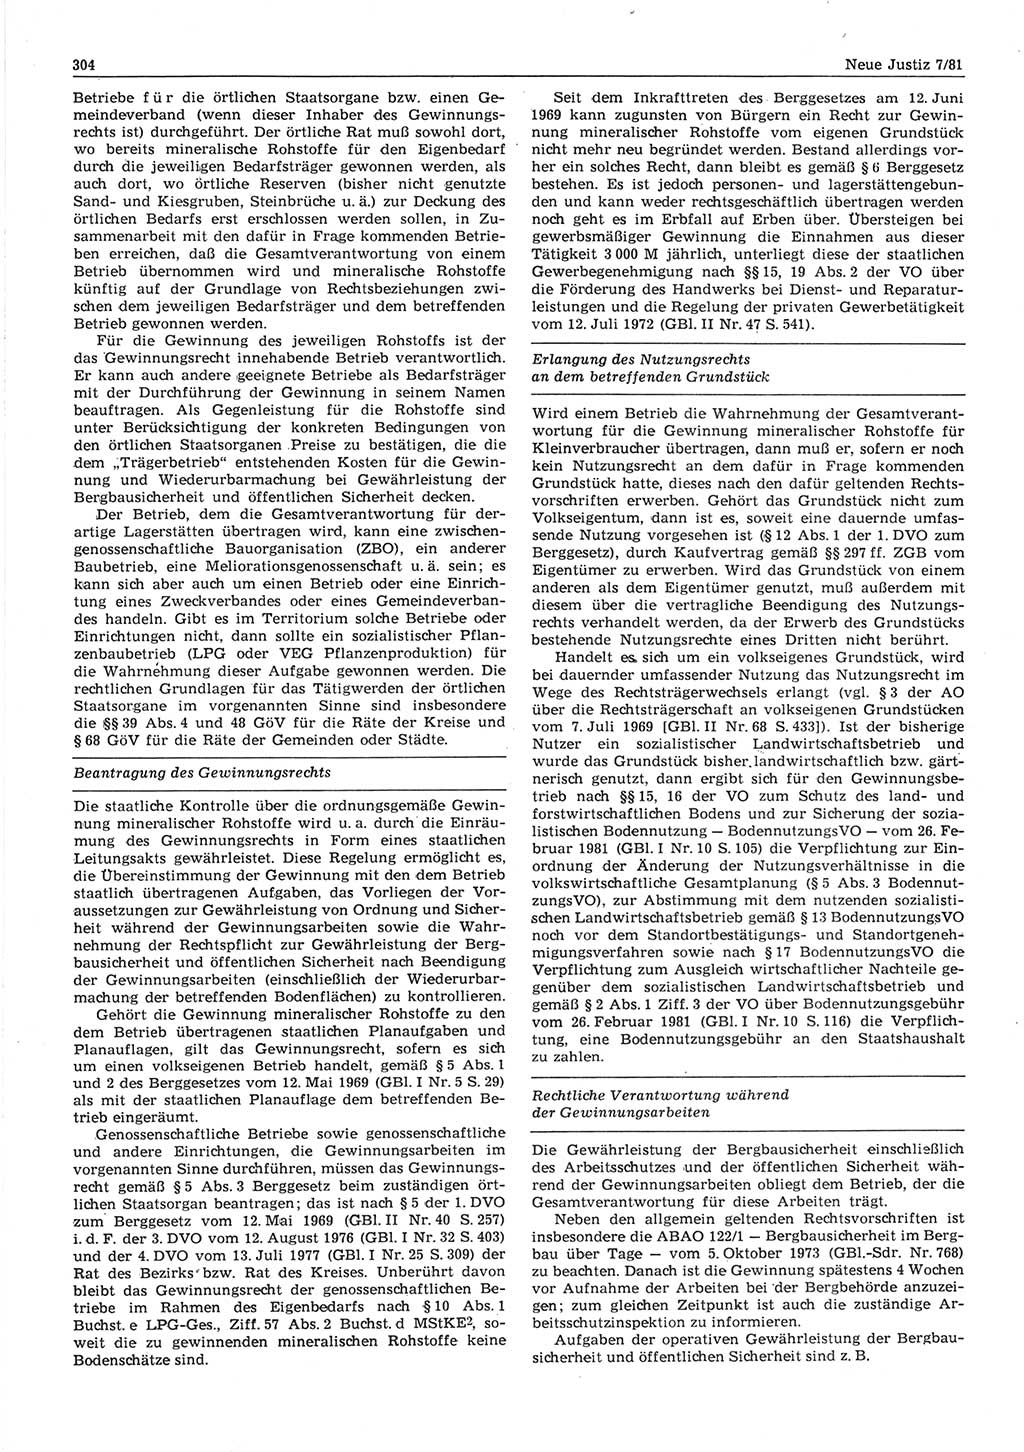 Neue Justiz (NJ), Zeitschrift für sozialistisches Recht und Gesetzlichkeit [Deutsche Demokratische Republik (DDR)], 35. Jahrgang 1981, Seite 304 (NJ DDR 1981, S. 304)